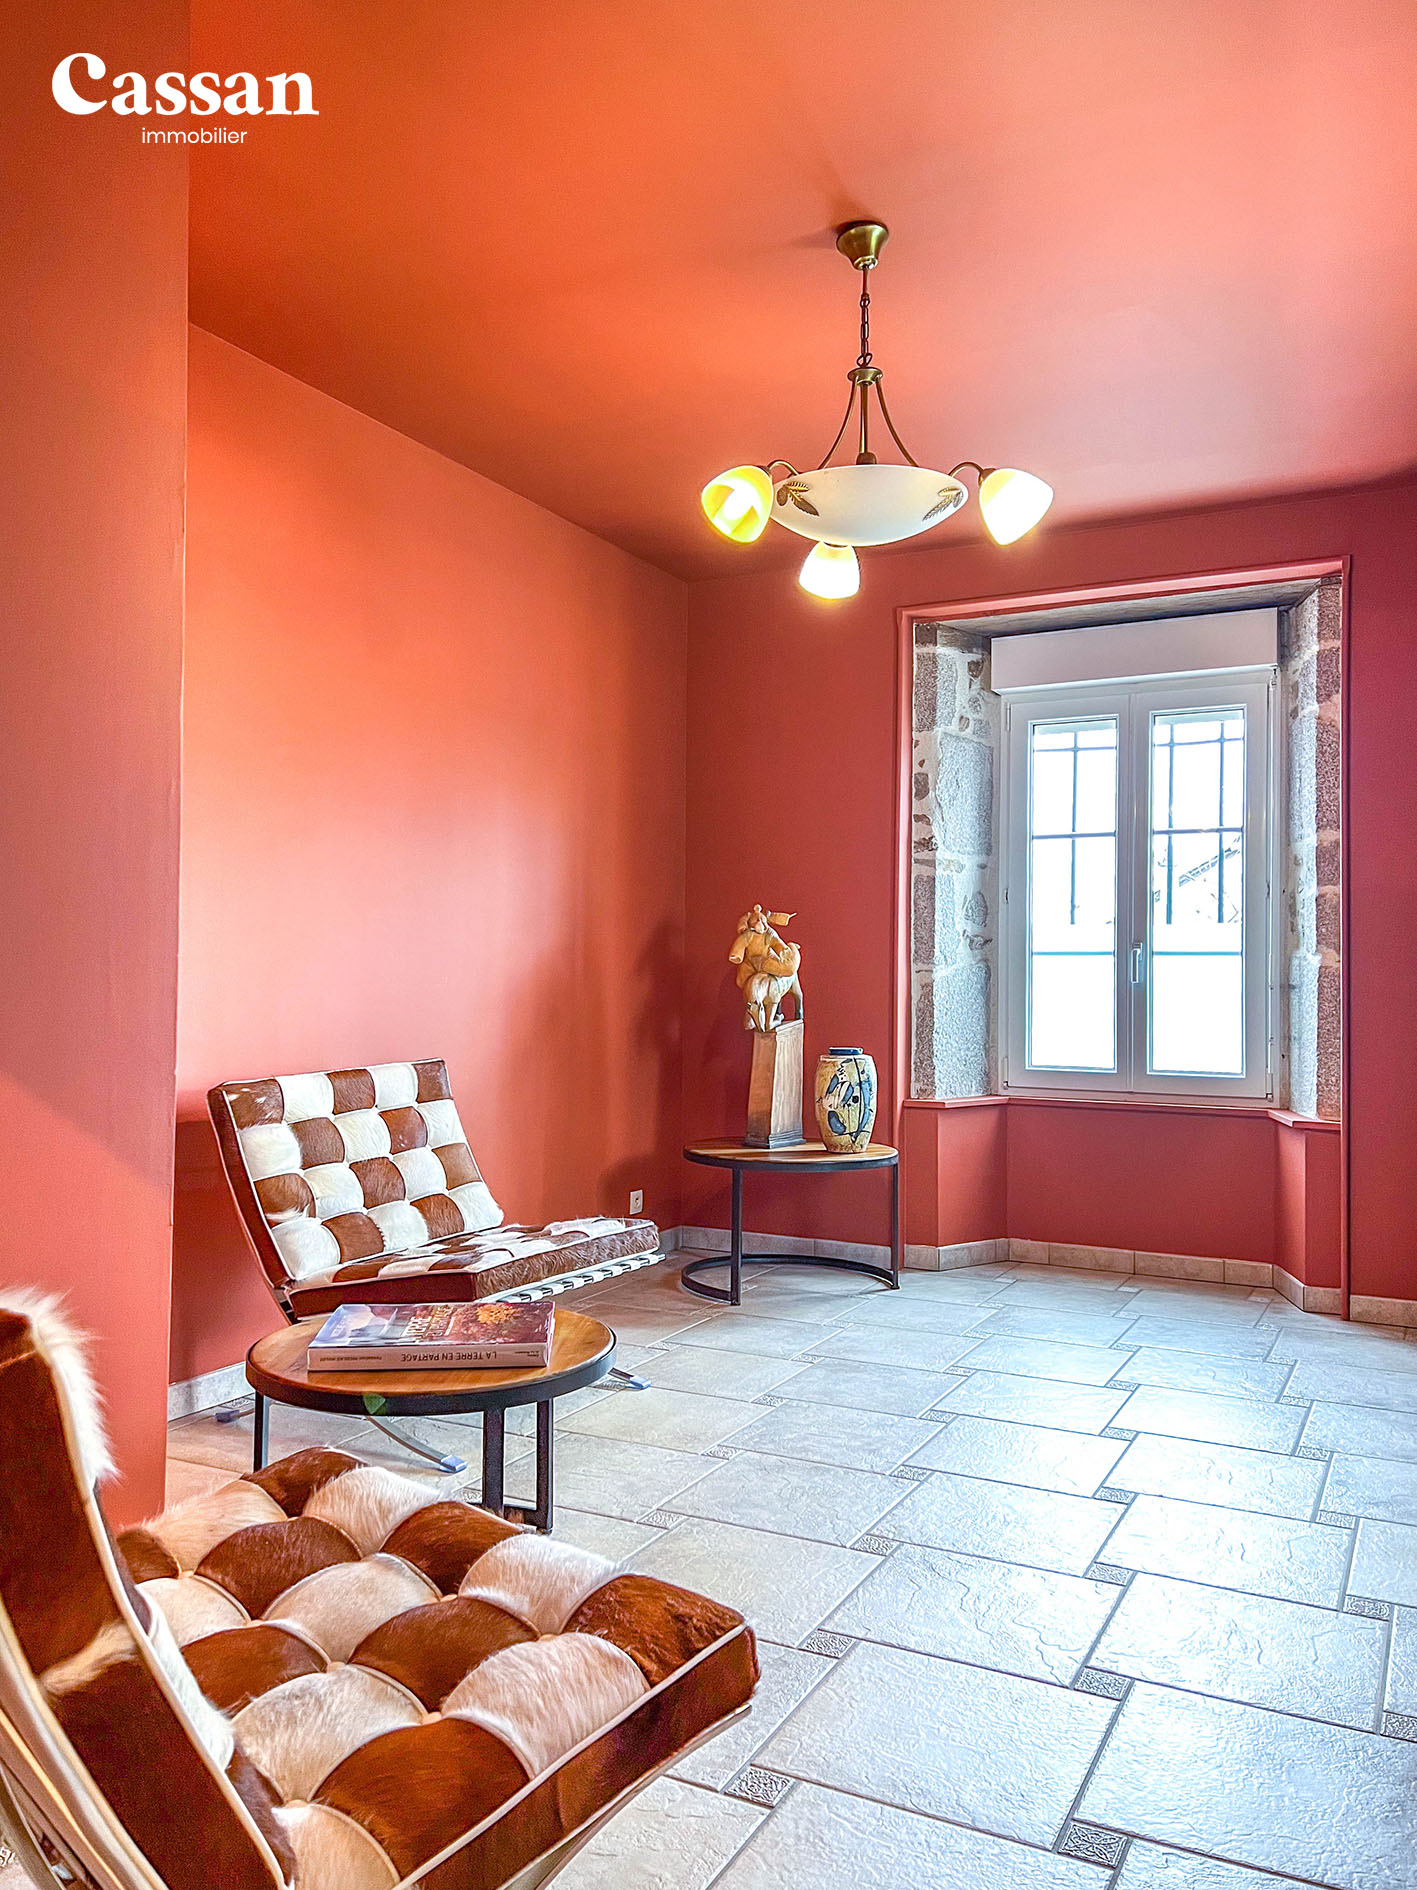 Salon maison à vendre Lacapelle del fraisse Cassan immobilier